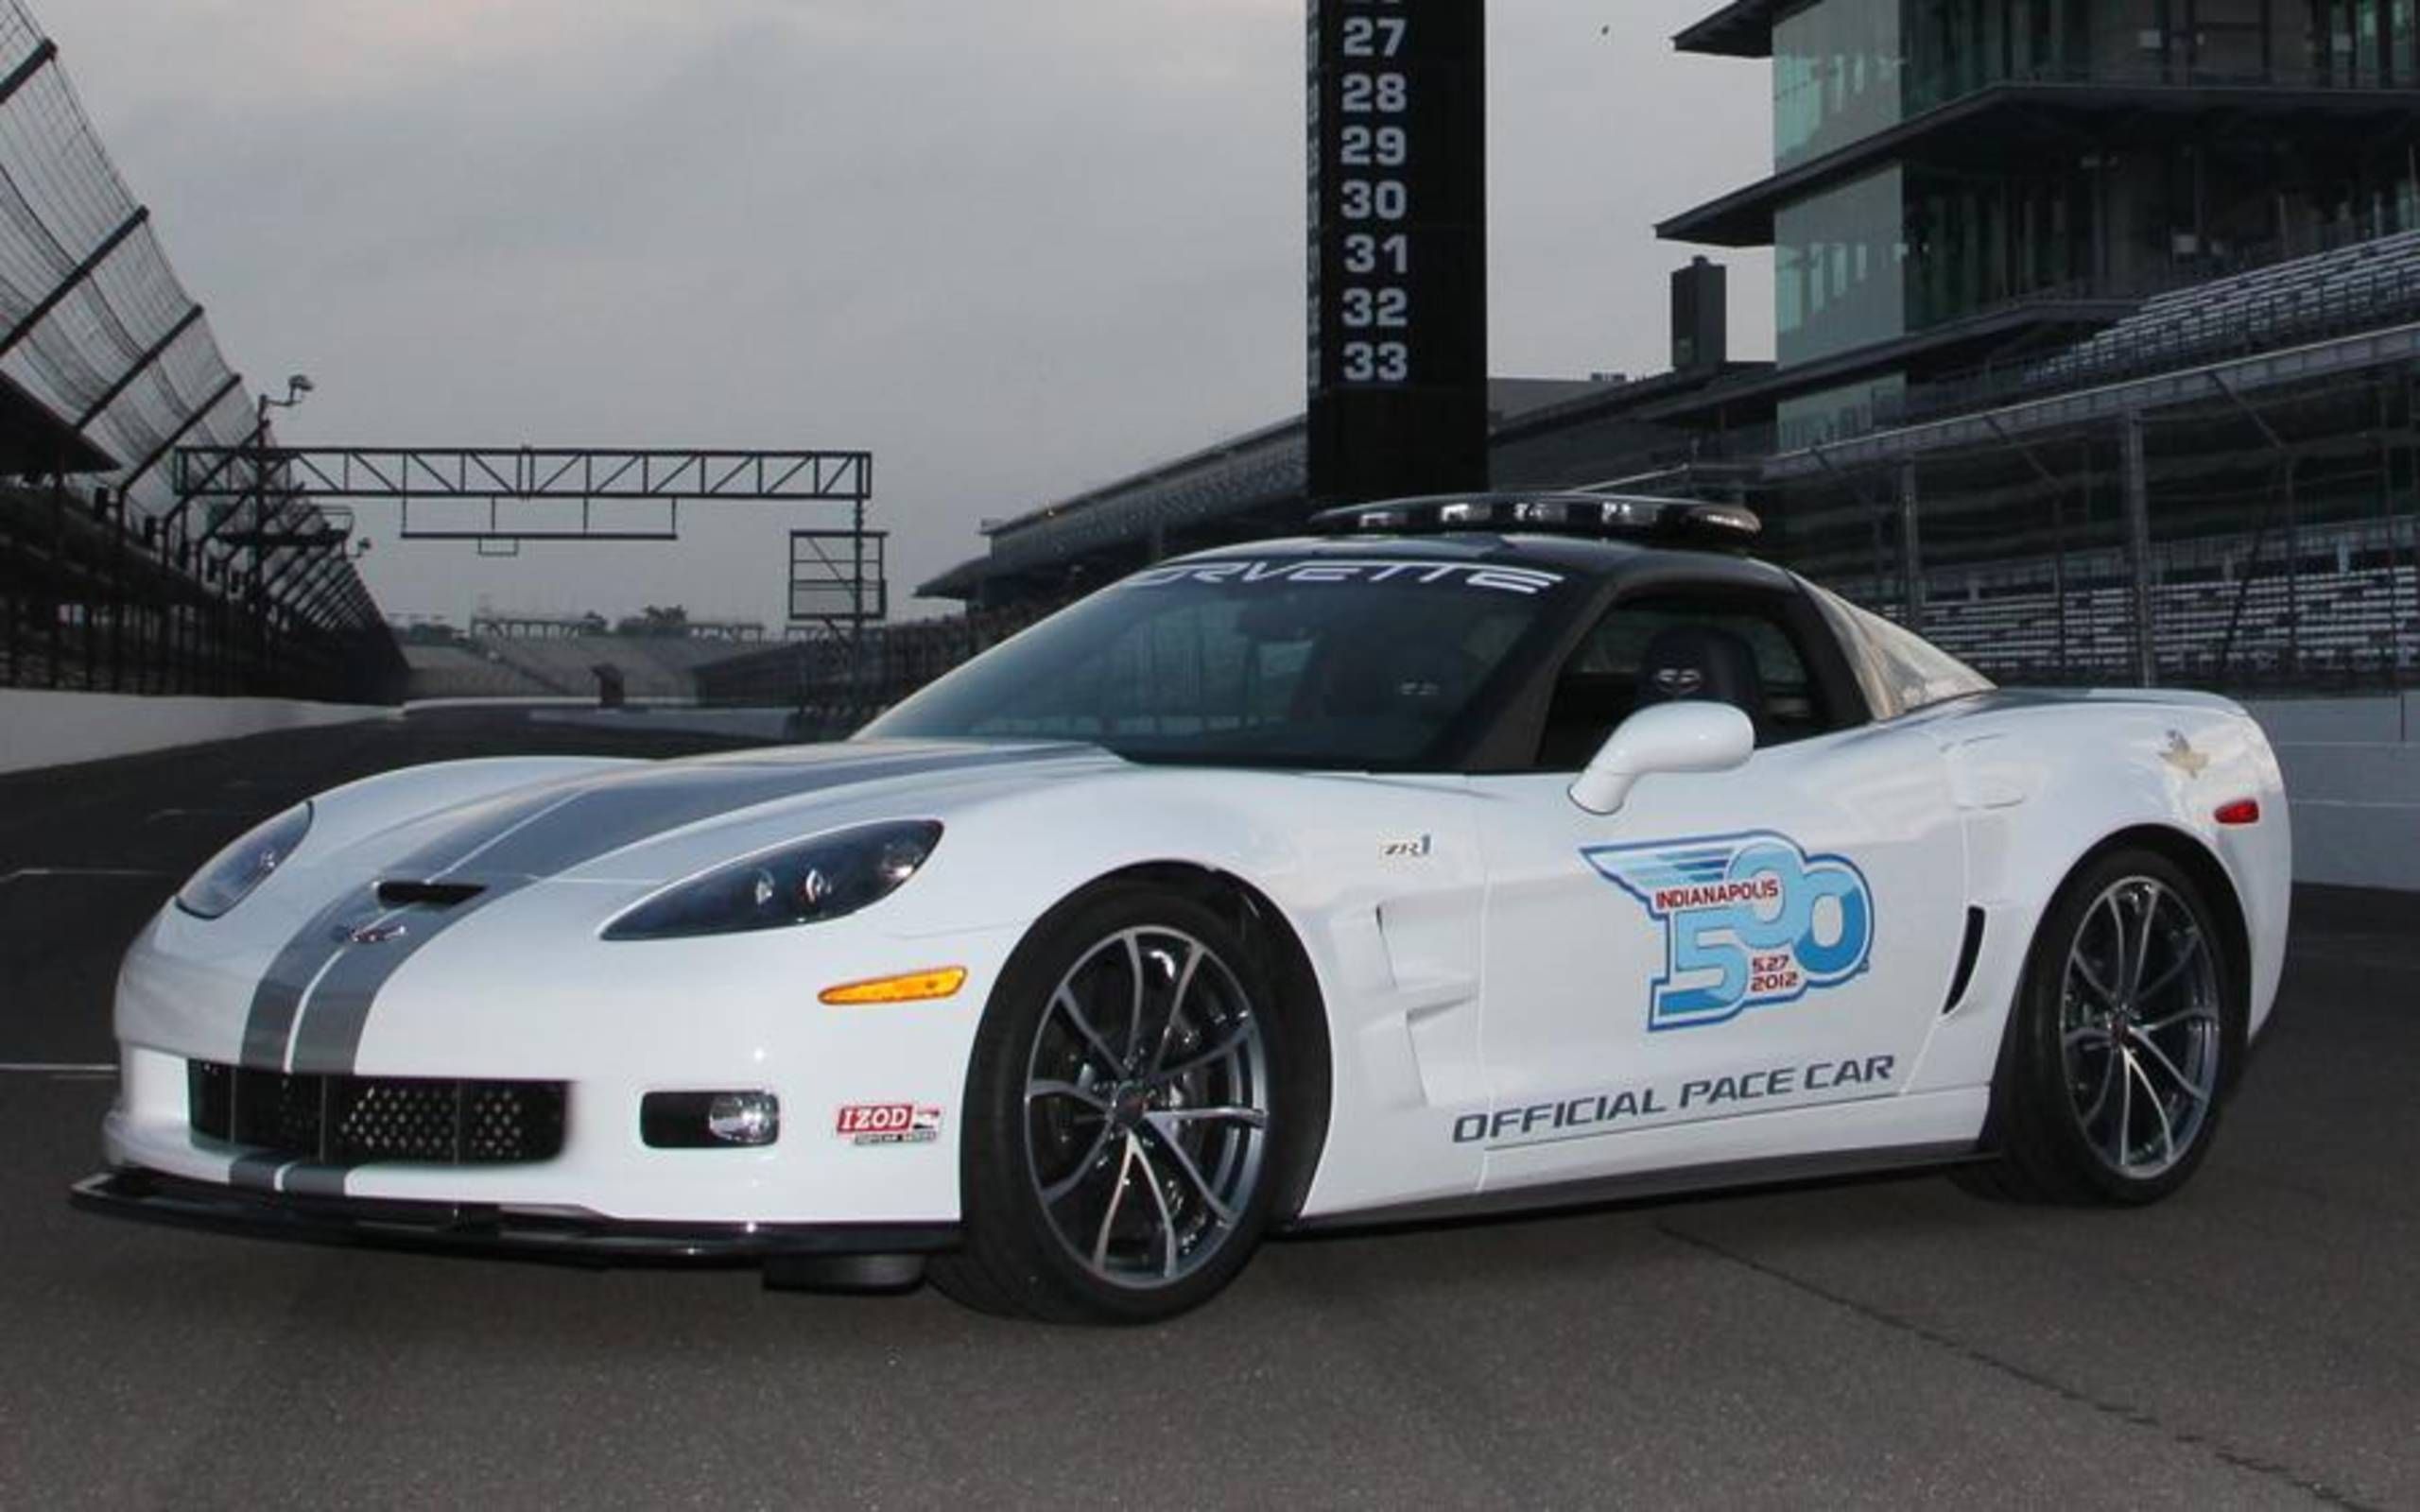 The 2013 Chevrolet Corvette ZR1 Indy Pace Car